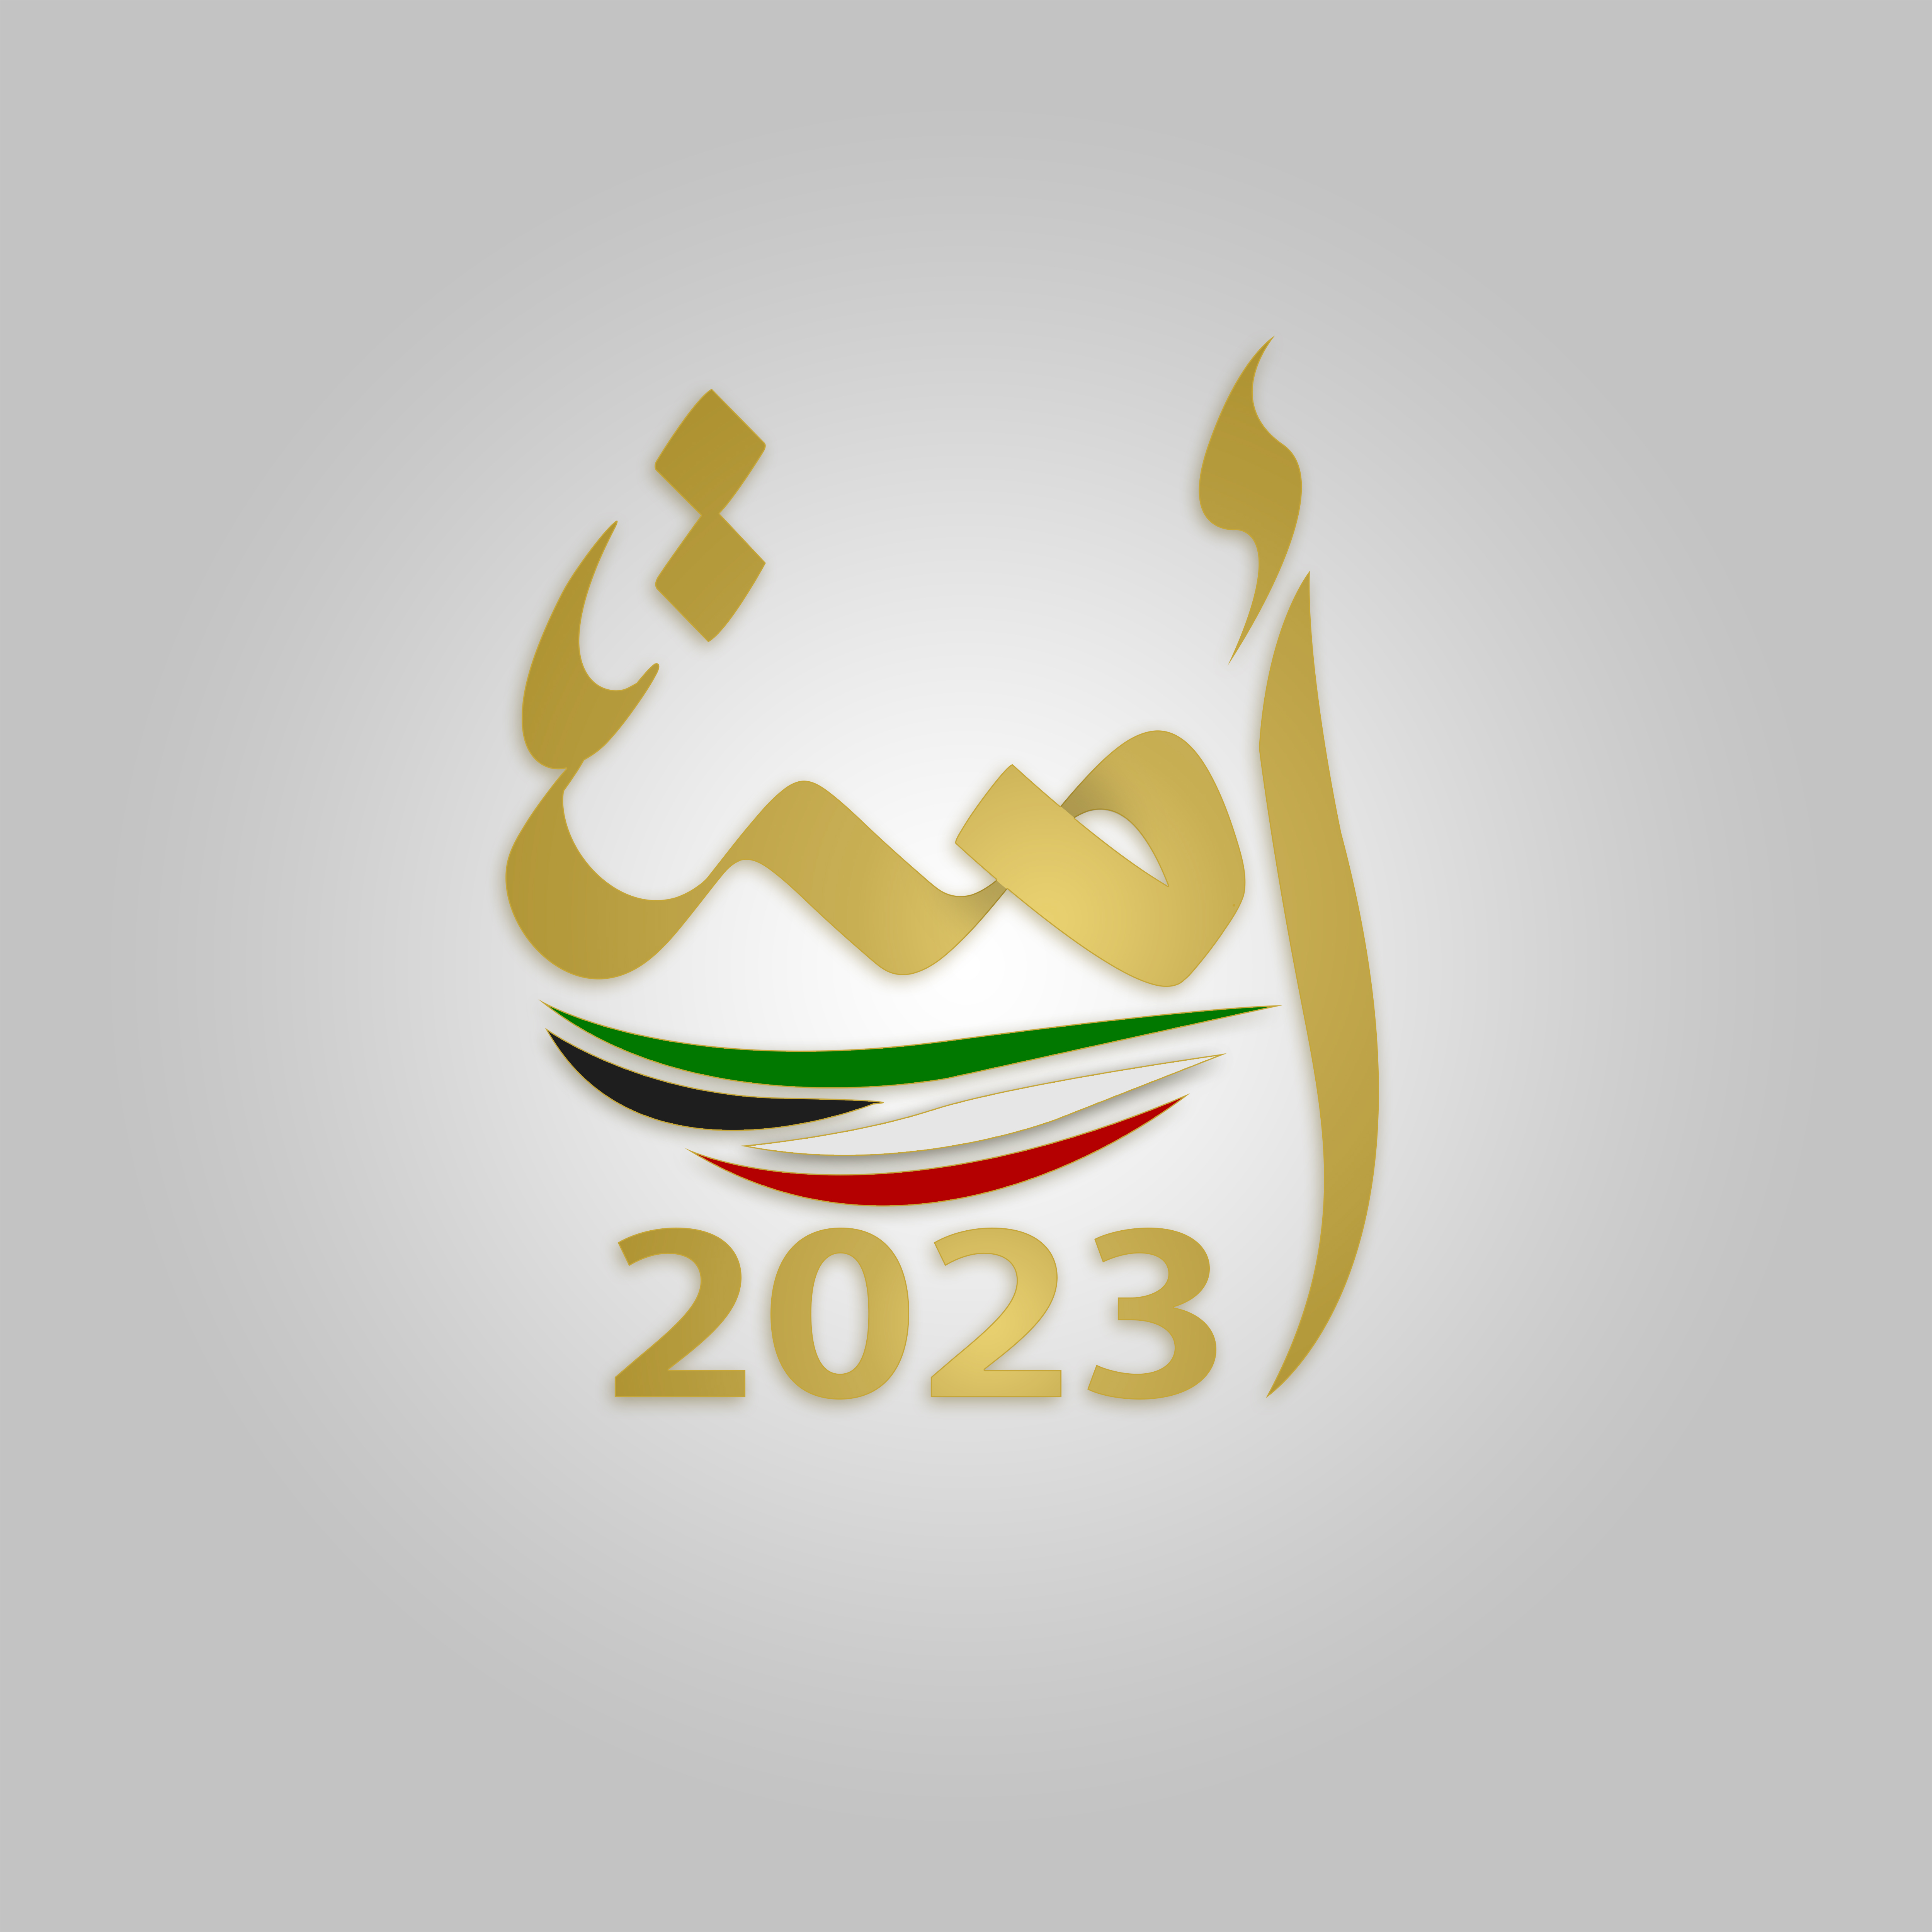 السير الذاتية للفائزين بعضوية مجلس الأمة الكويتي (أمة 2023) عن الدائرة الانتخابية الأولى